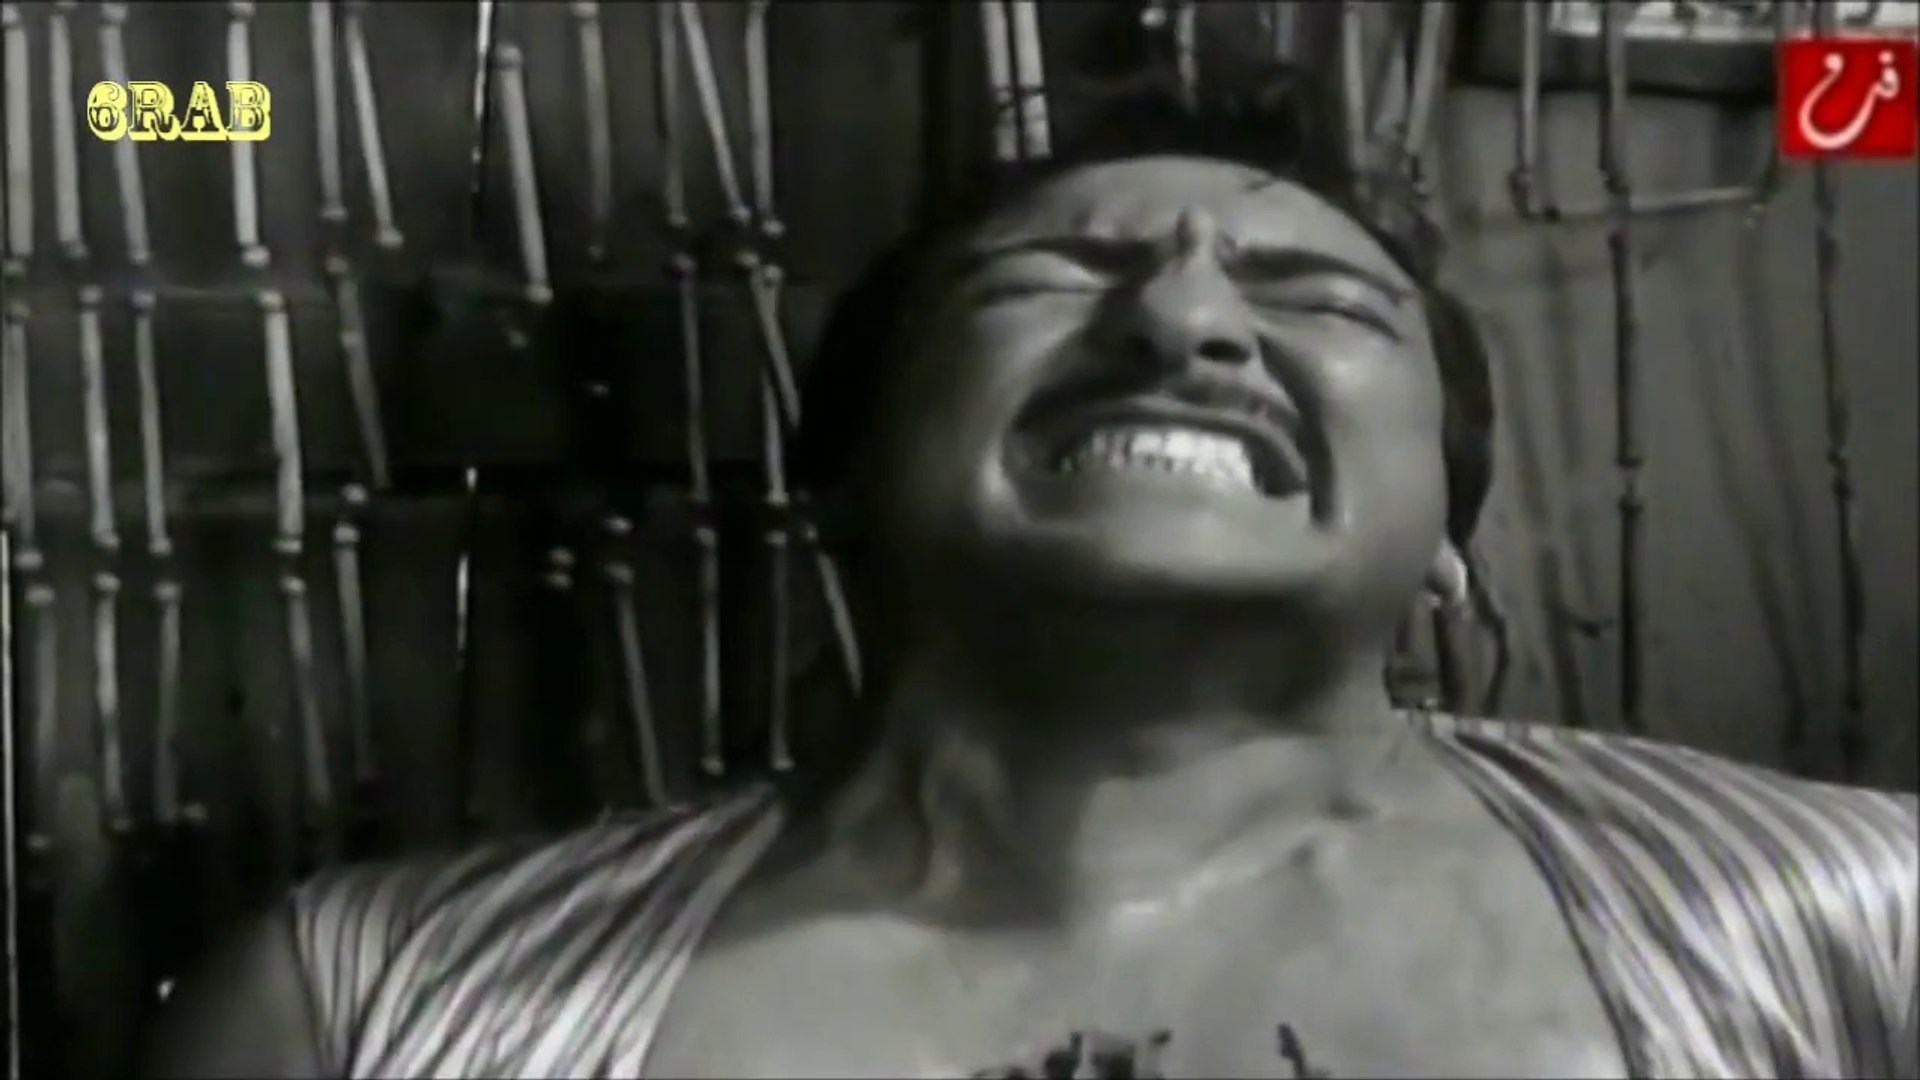 فايزة احمد - قلبي عليك يا خي - فيلم تمر حنة عام 1957م - video Dailymotion